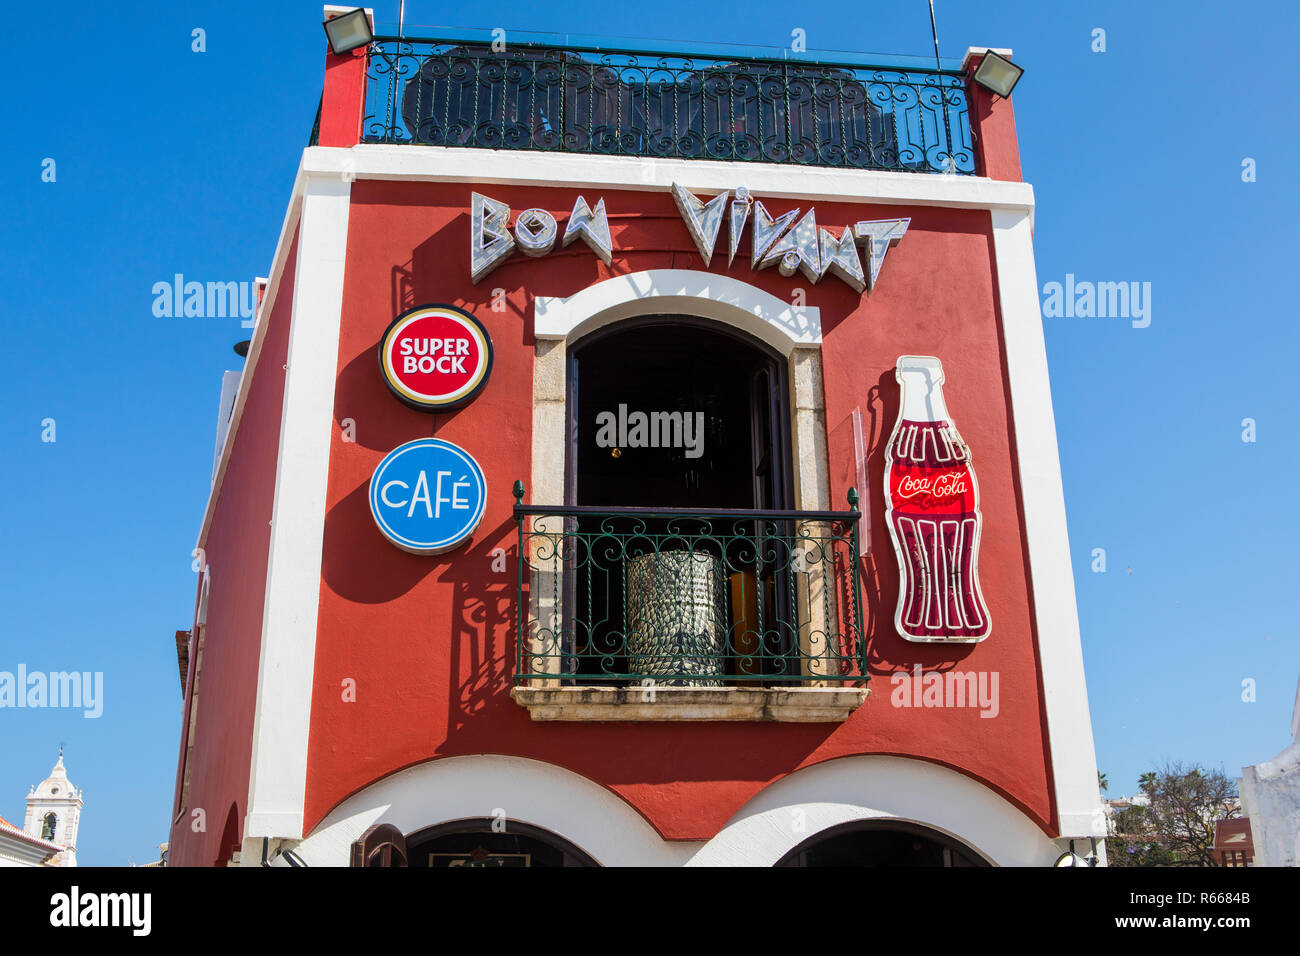 LAGOS, Portogallo - 12 Luglio 2018: vista esterna del famoso Bon Vivant bar, situato nel centro storico della città vecchia di Lagos in Portogallo, il 12 Luglio 2018 Foto Stock